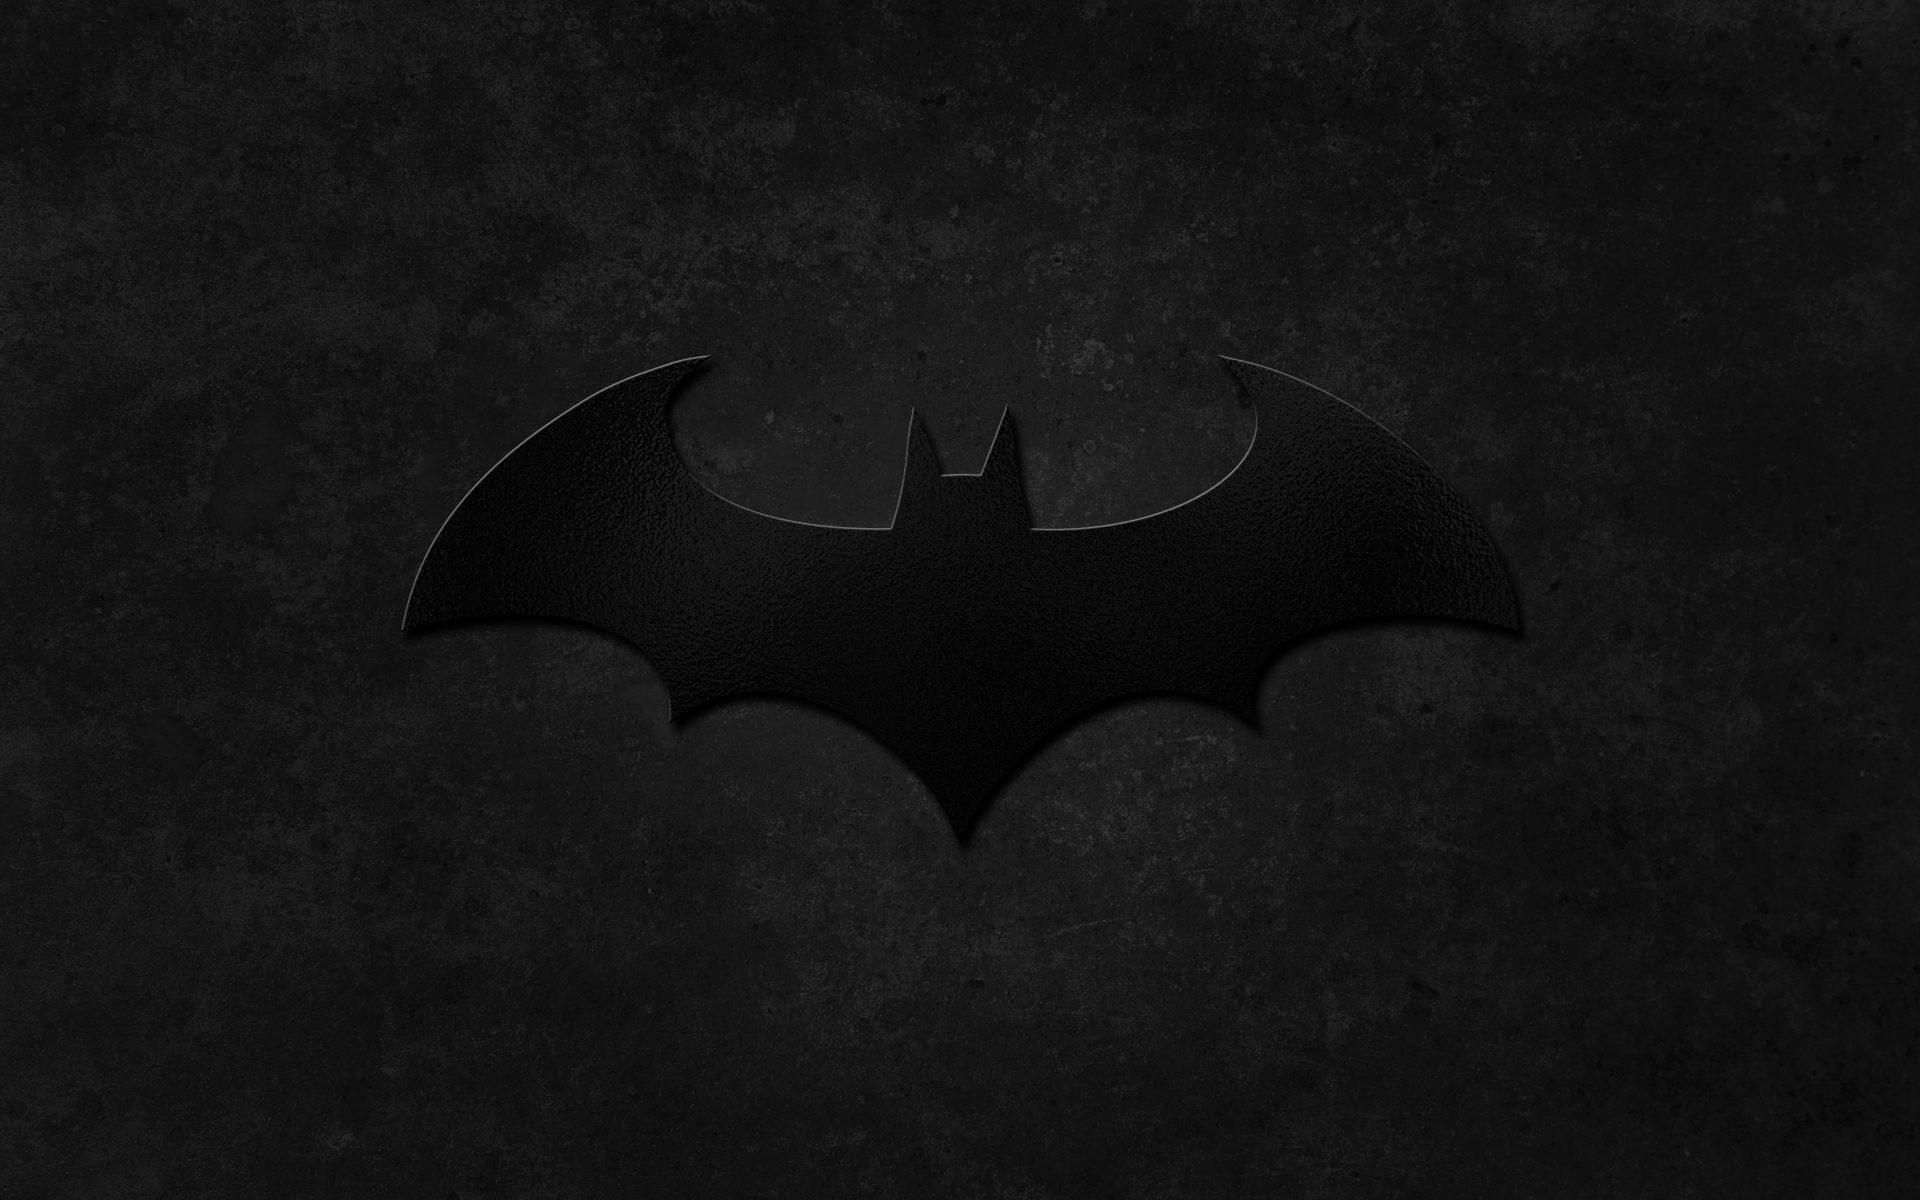 47+] Cool Batman Logo Wallpaper - WallpaperSafari